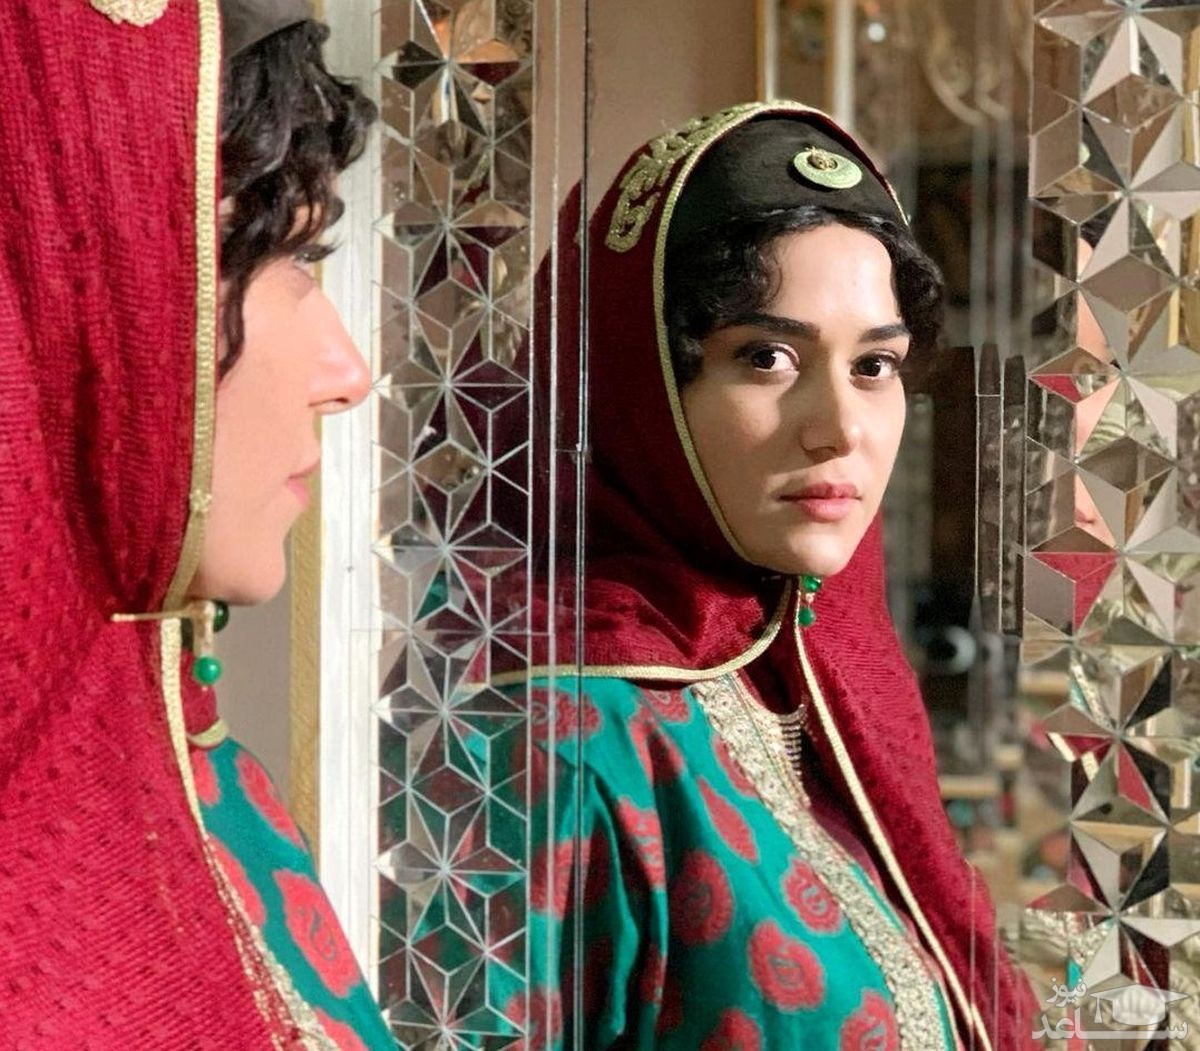 منتقد سینما: مثلث عشقی «شهرزاد» در «جیران» تکرار شده است!